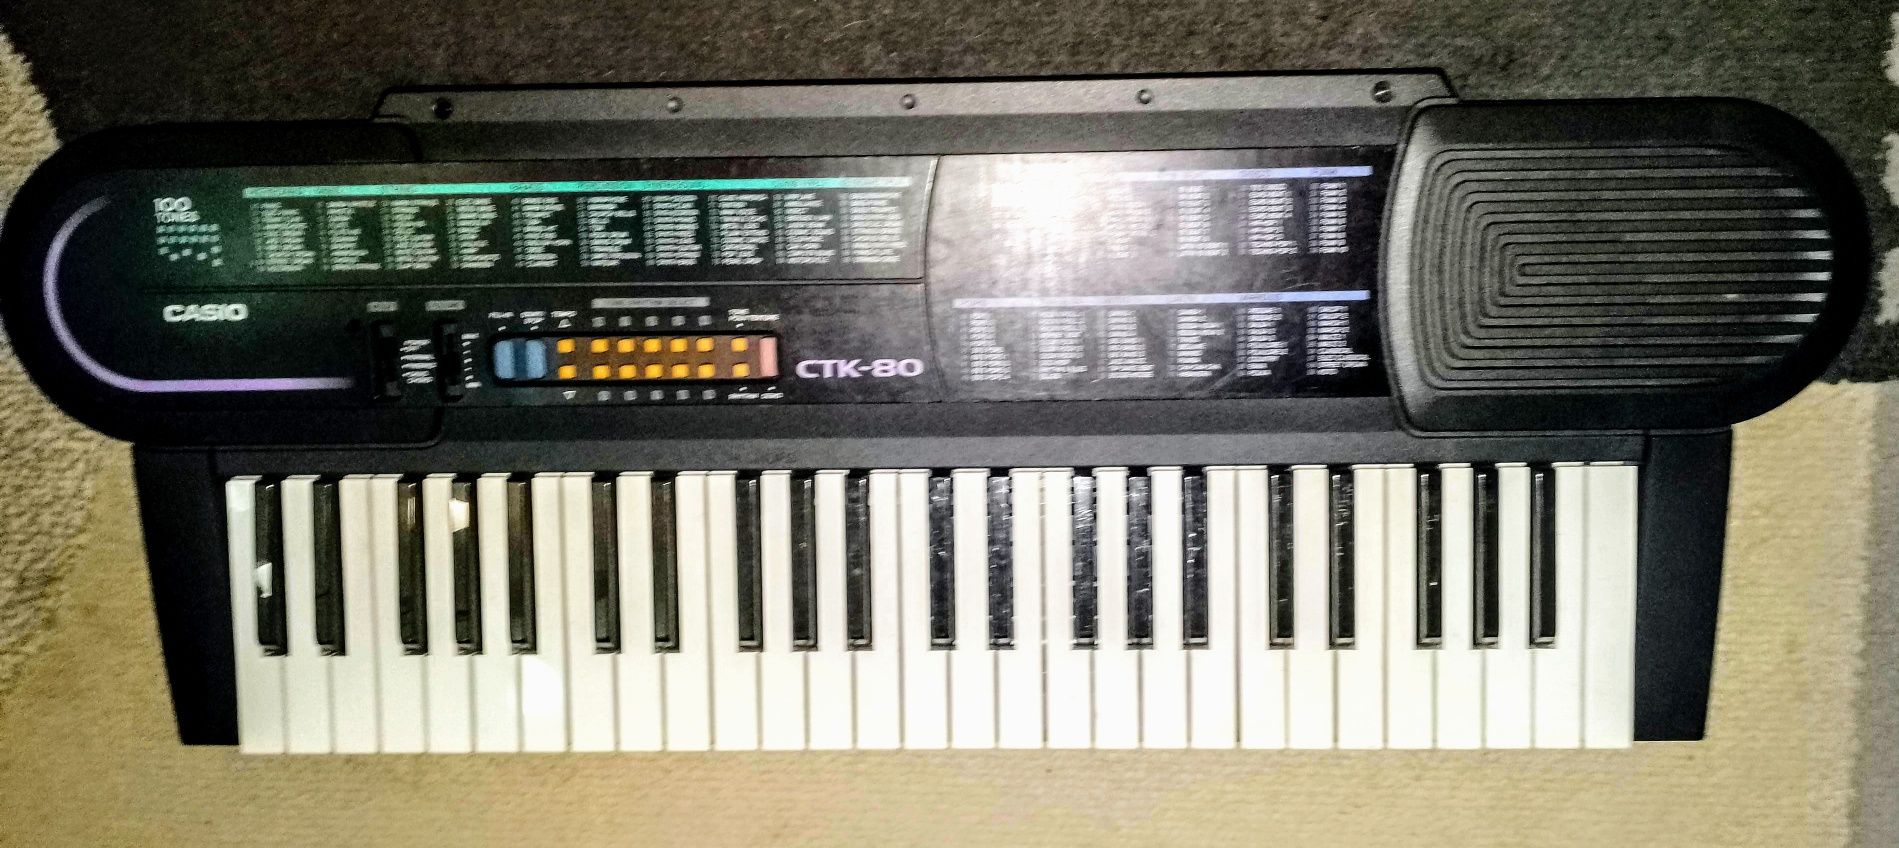 CASIO CTK-80 monofoniczny keyboard dla dzieci i początkujacych.